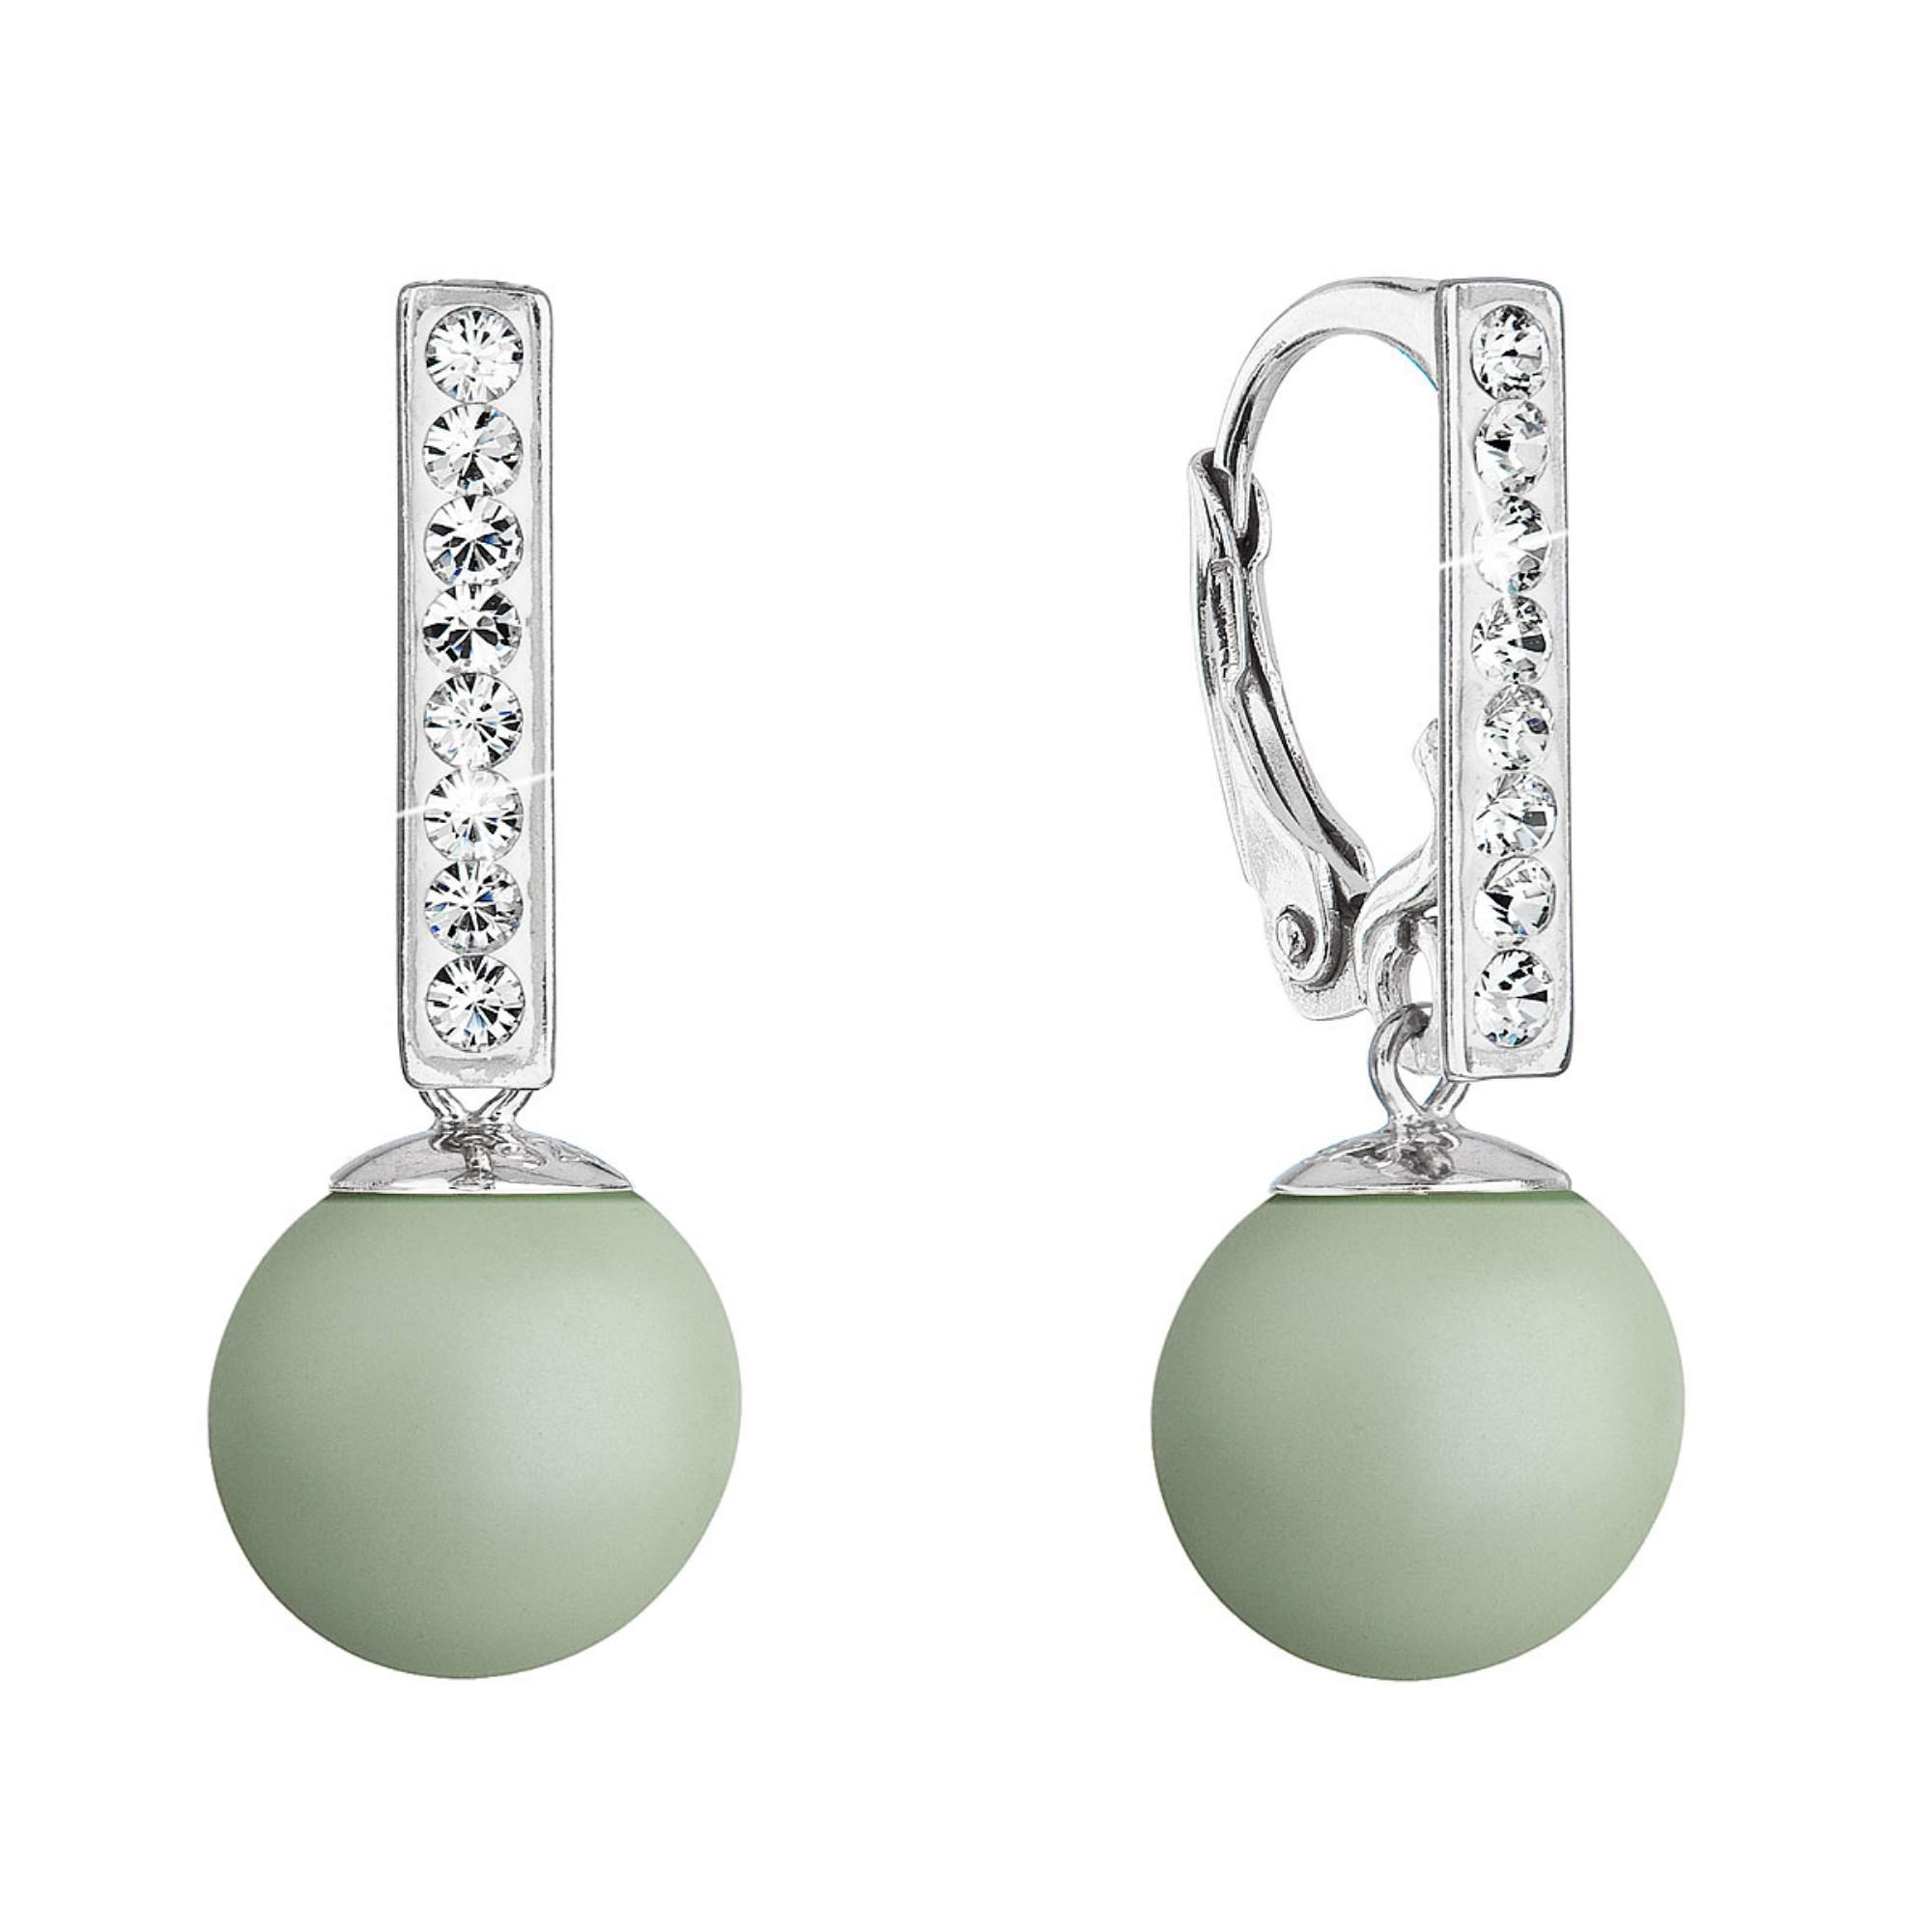 Evolution Group Stříbrné náušnice visací s perlou a krystaly Swarovski zelené kulaté 71174.3 pastel green